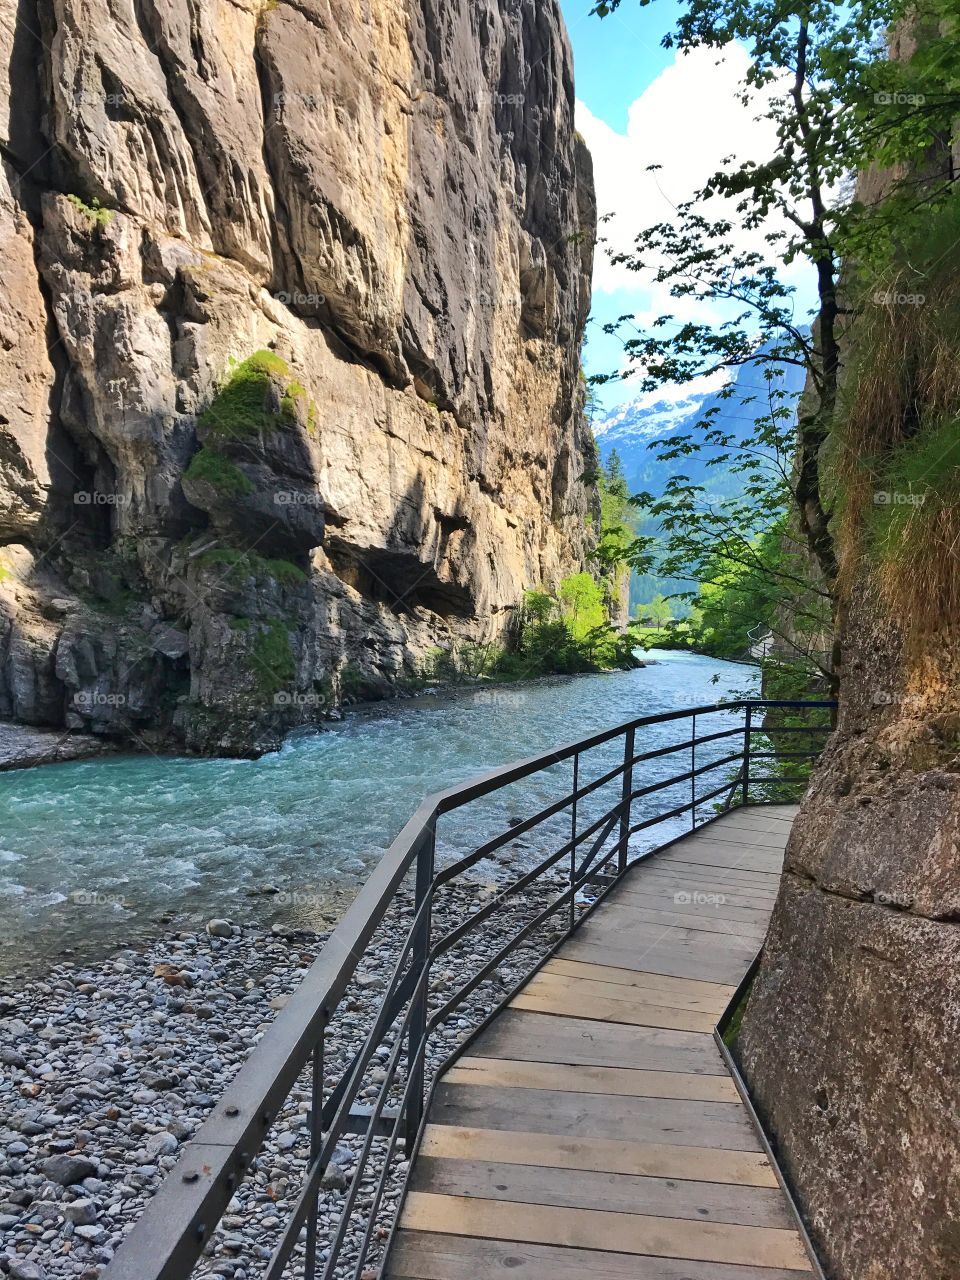 Aare gorge in Switzerland 